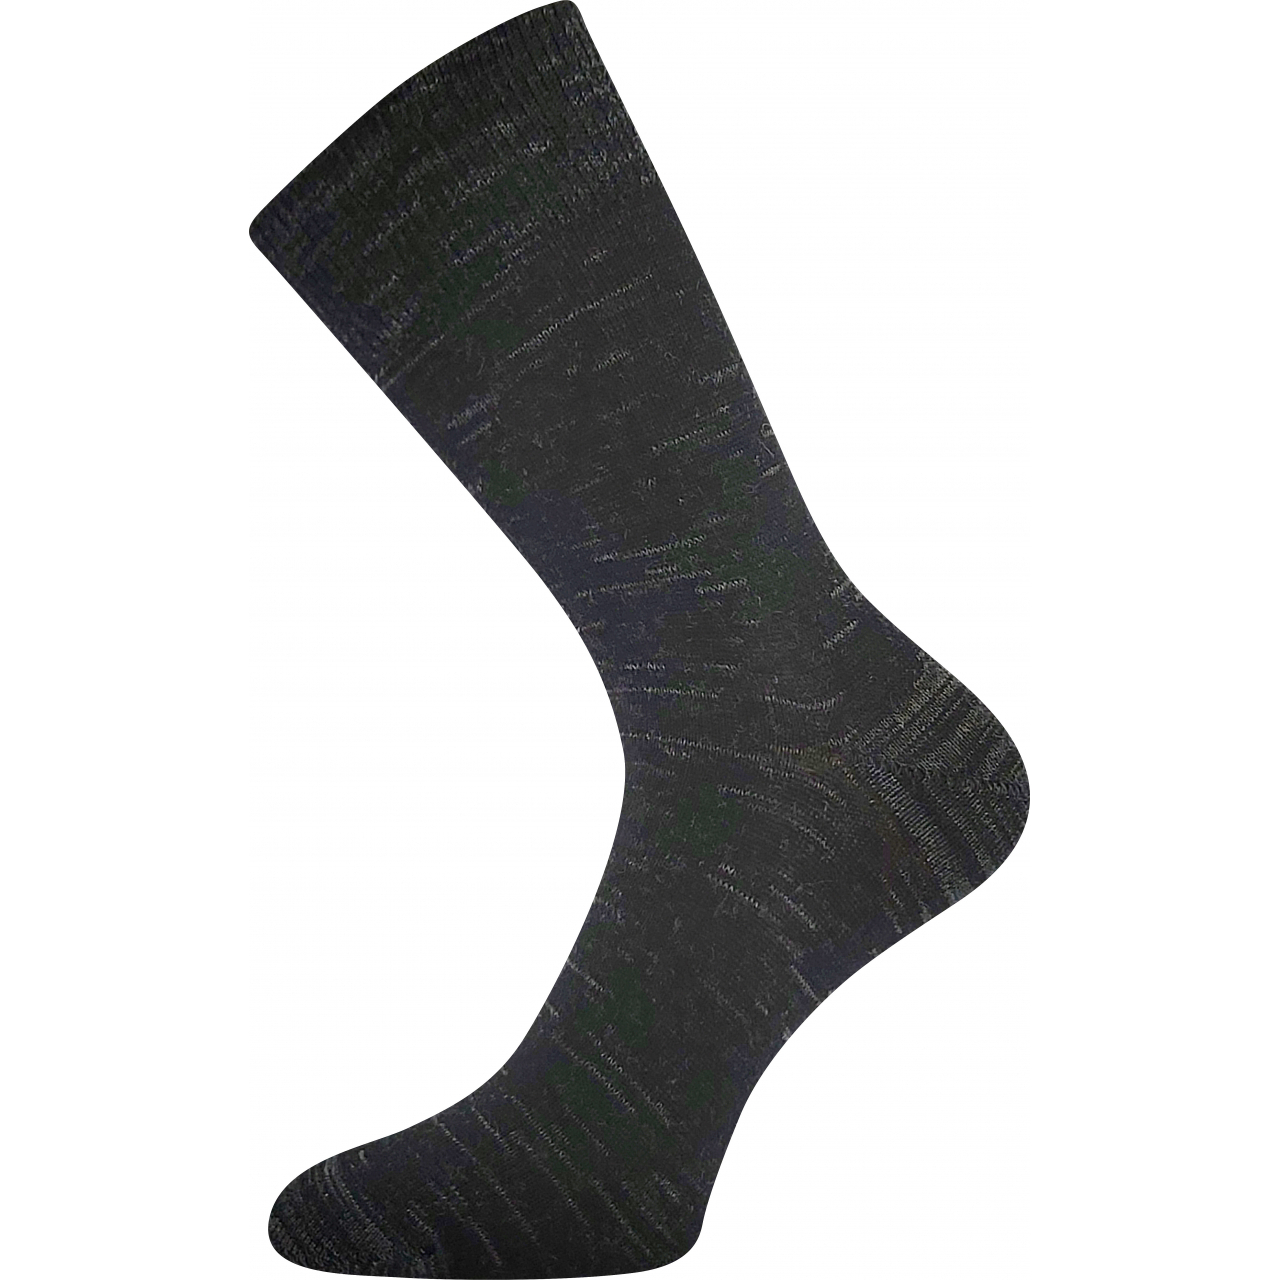 Ponožky vlněné unisex Lonka KlimaX - černé, 35-38